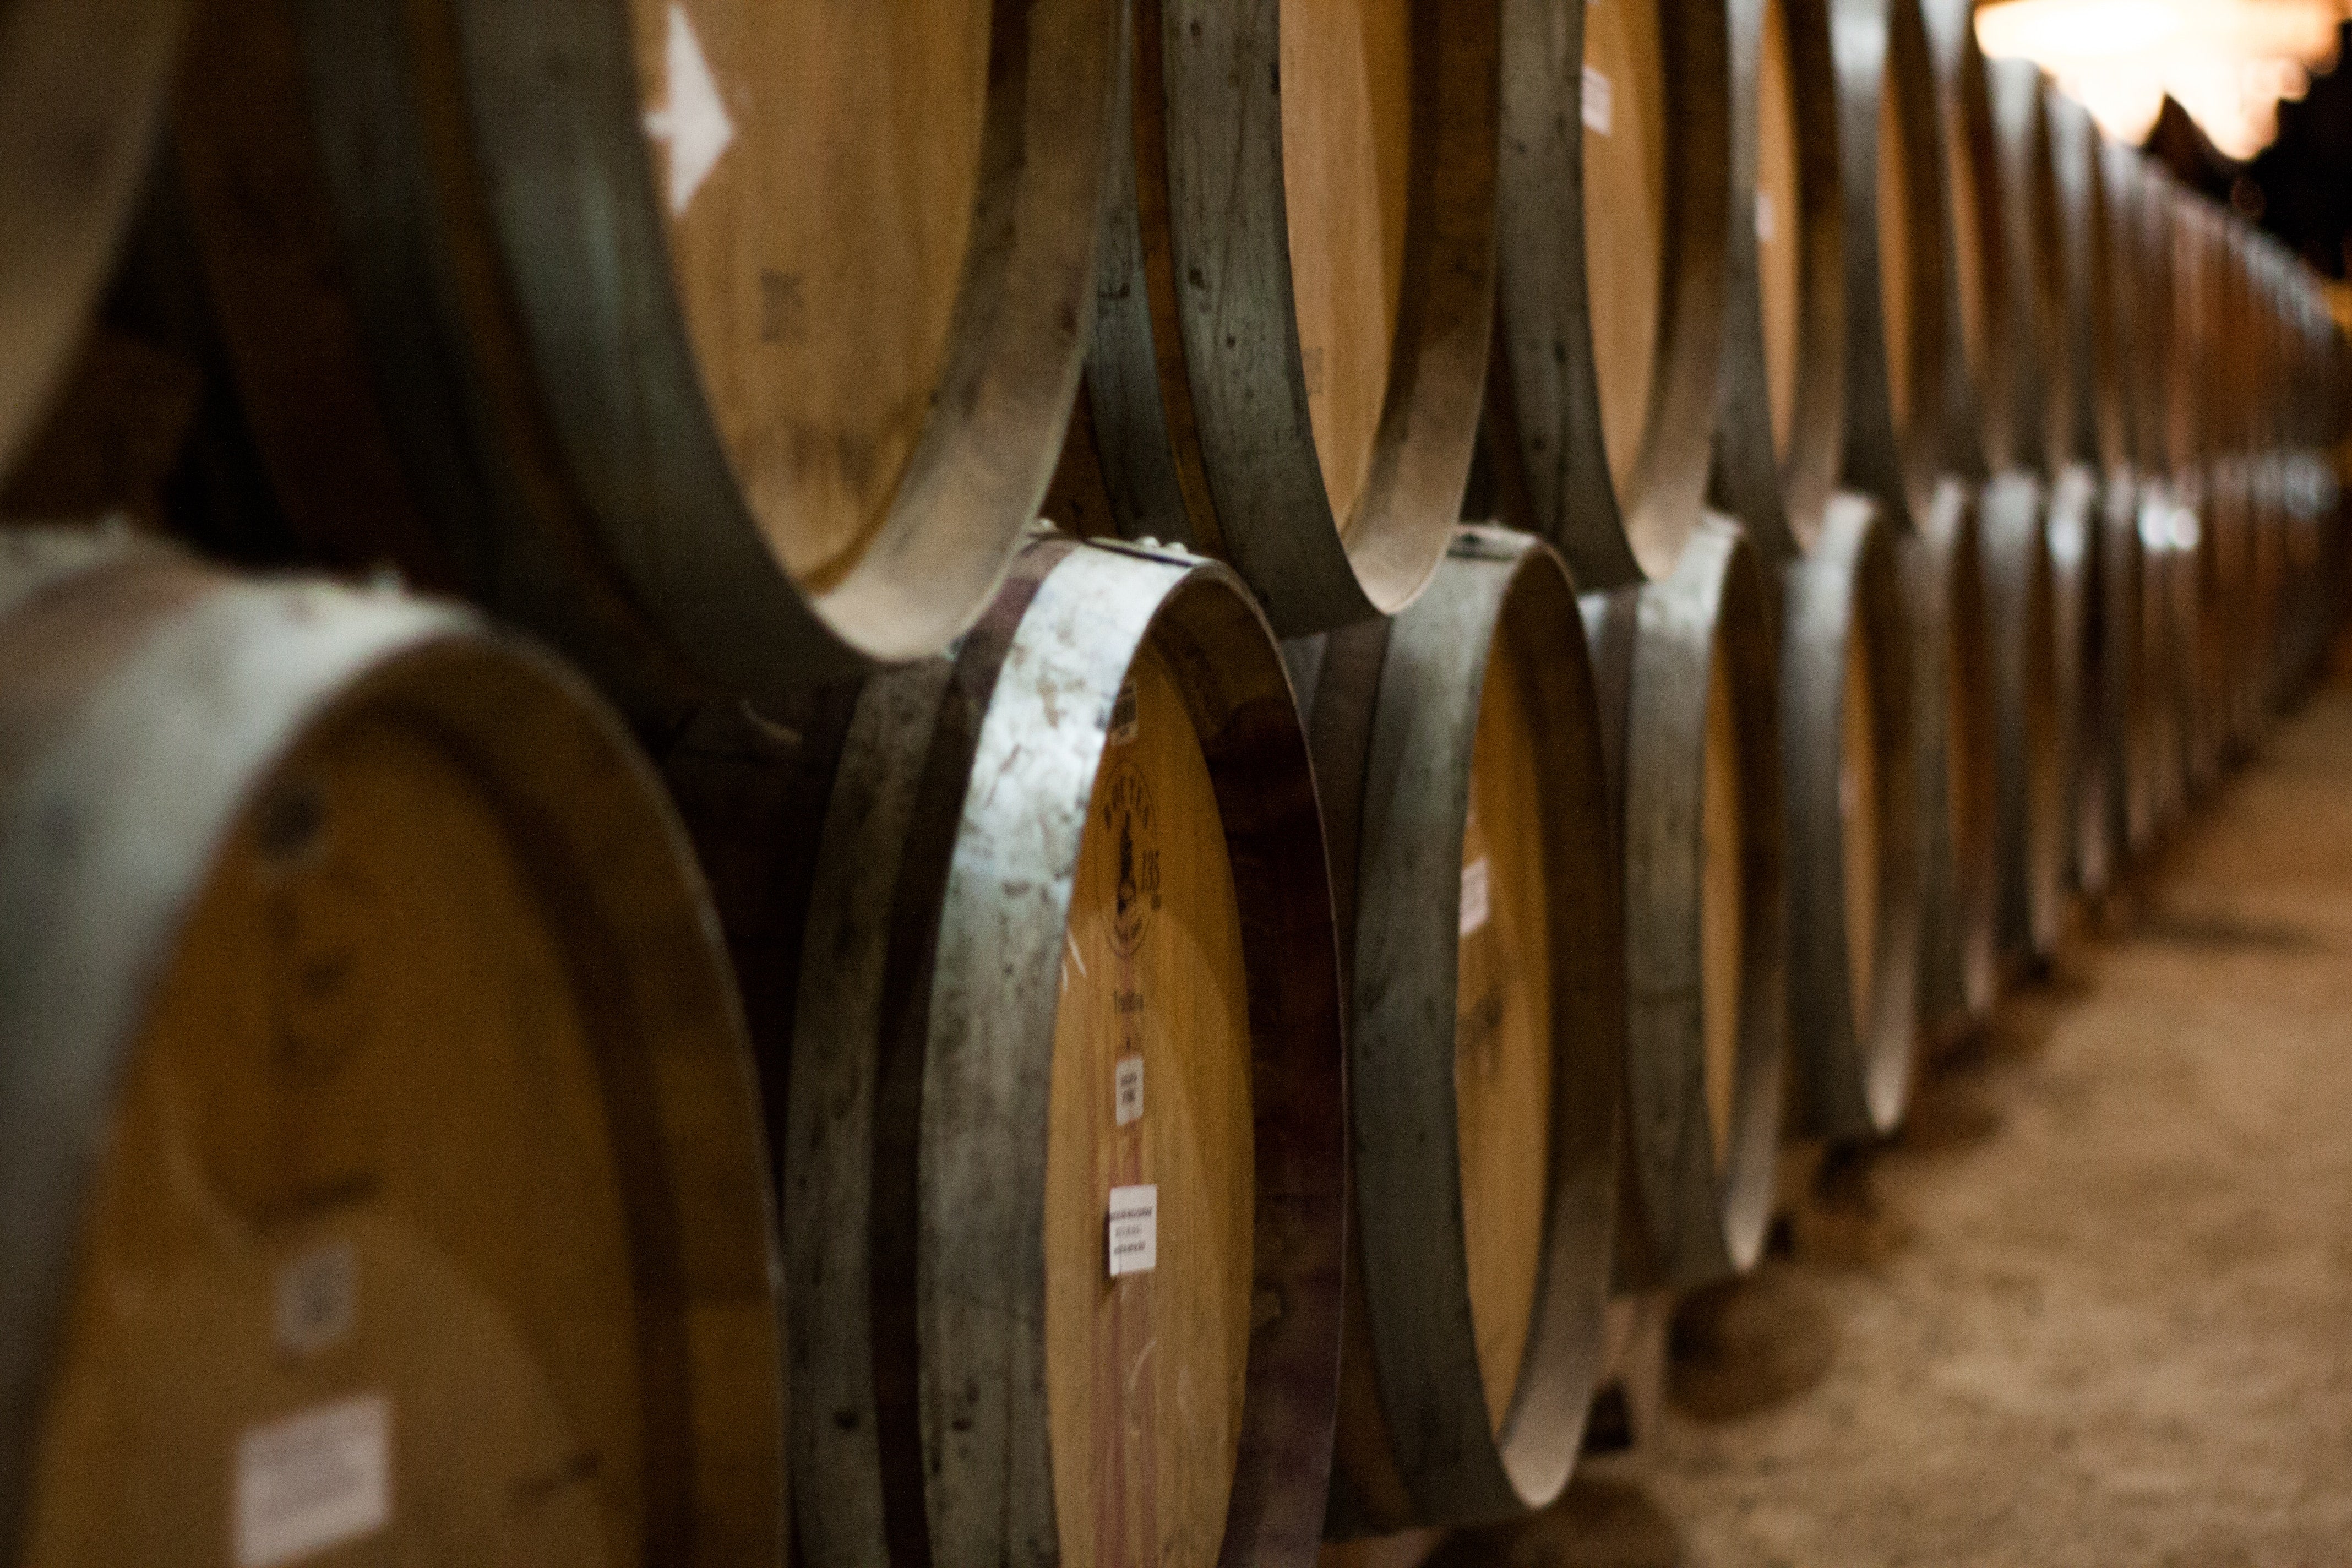 Oak barrel wine